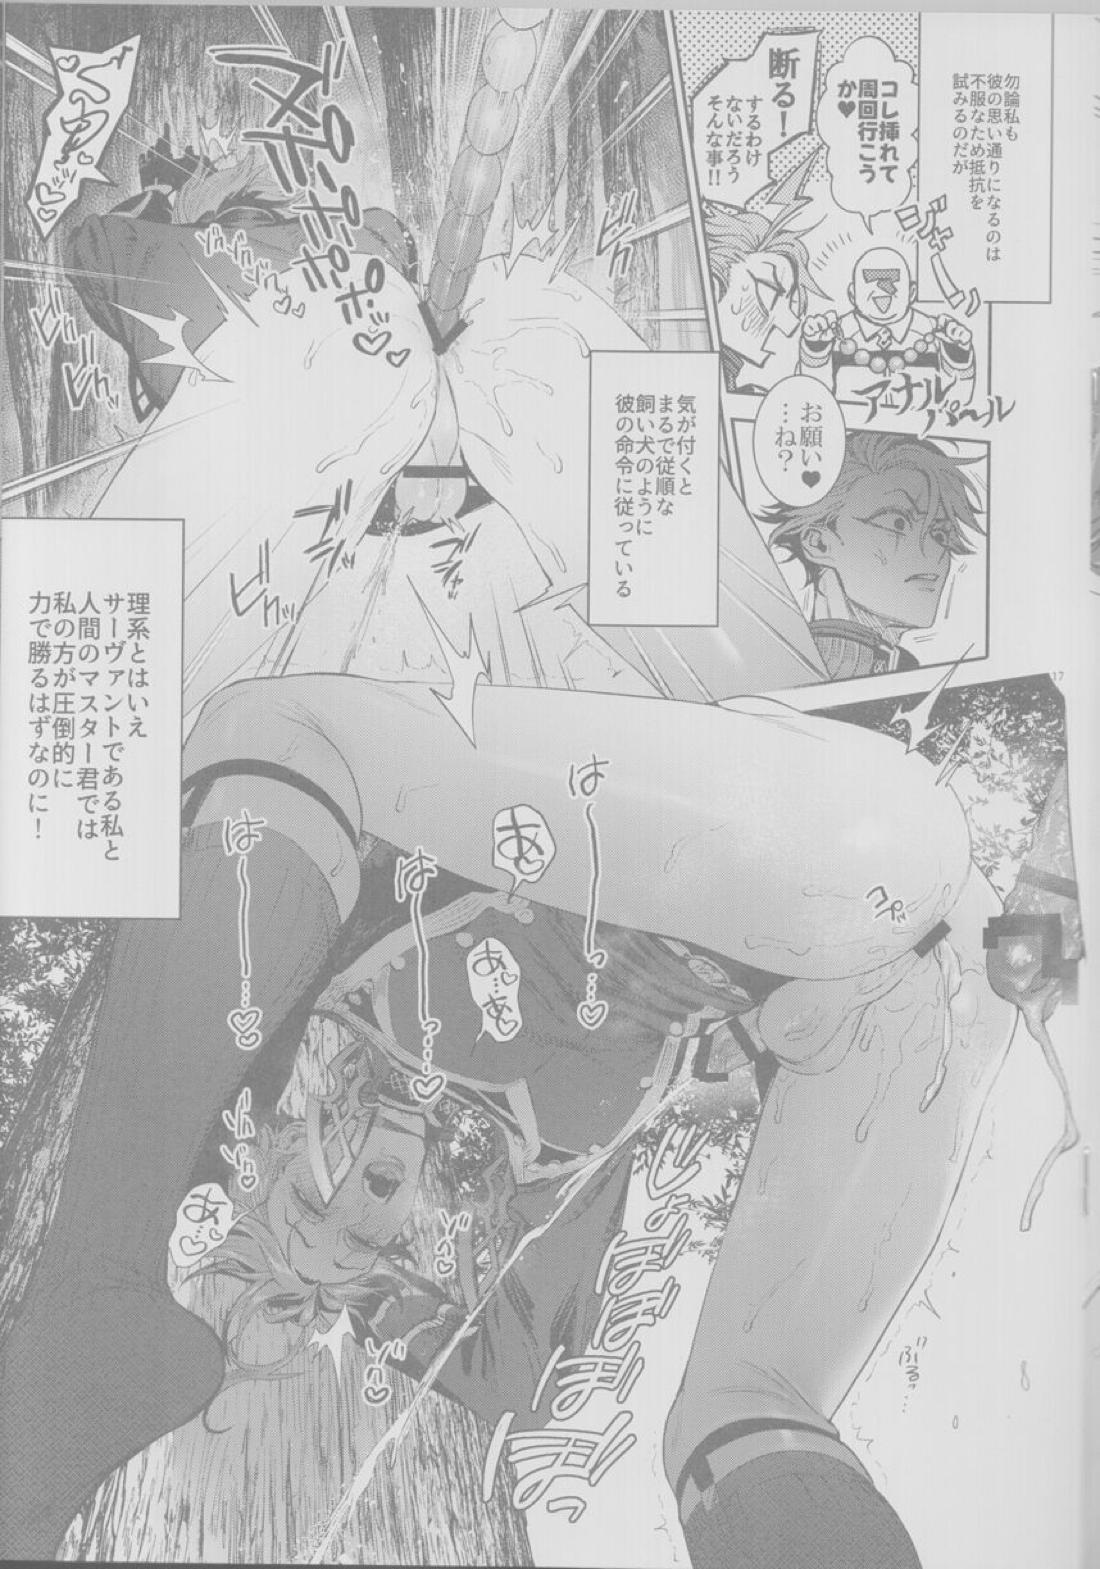 【BL漫画 Fate/Grand Order】悪いことばかりする悪の天才モリアーティがマスターの絶対服従コマンドコードで身体を操られて調教されちゃうドキドキゲイエッチ16